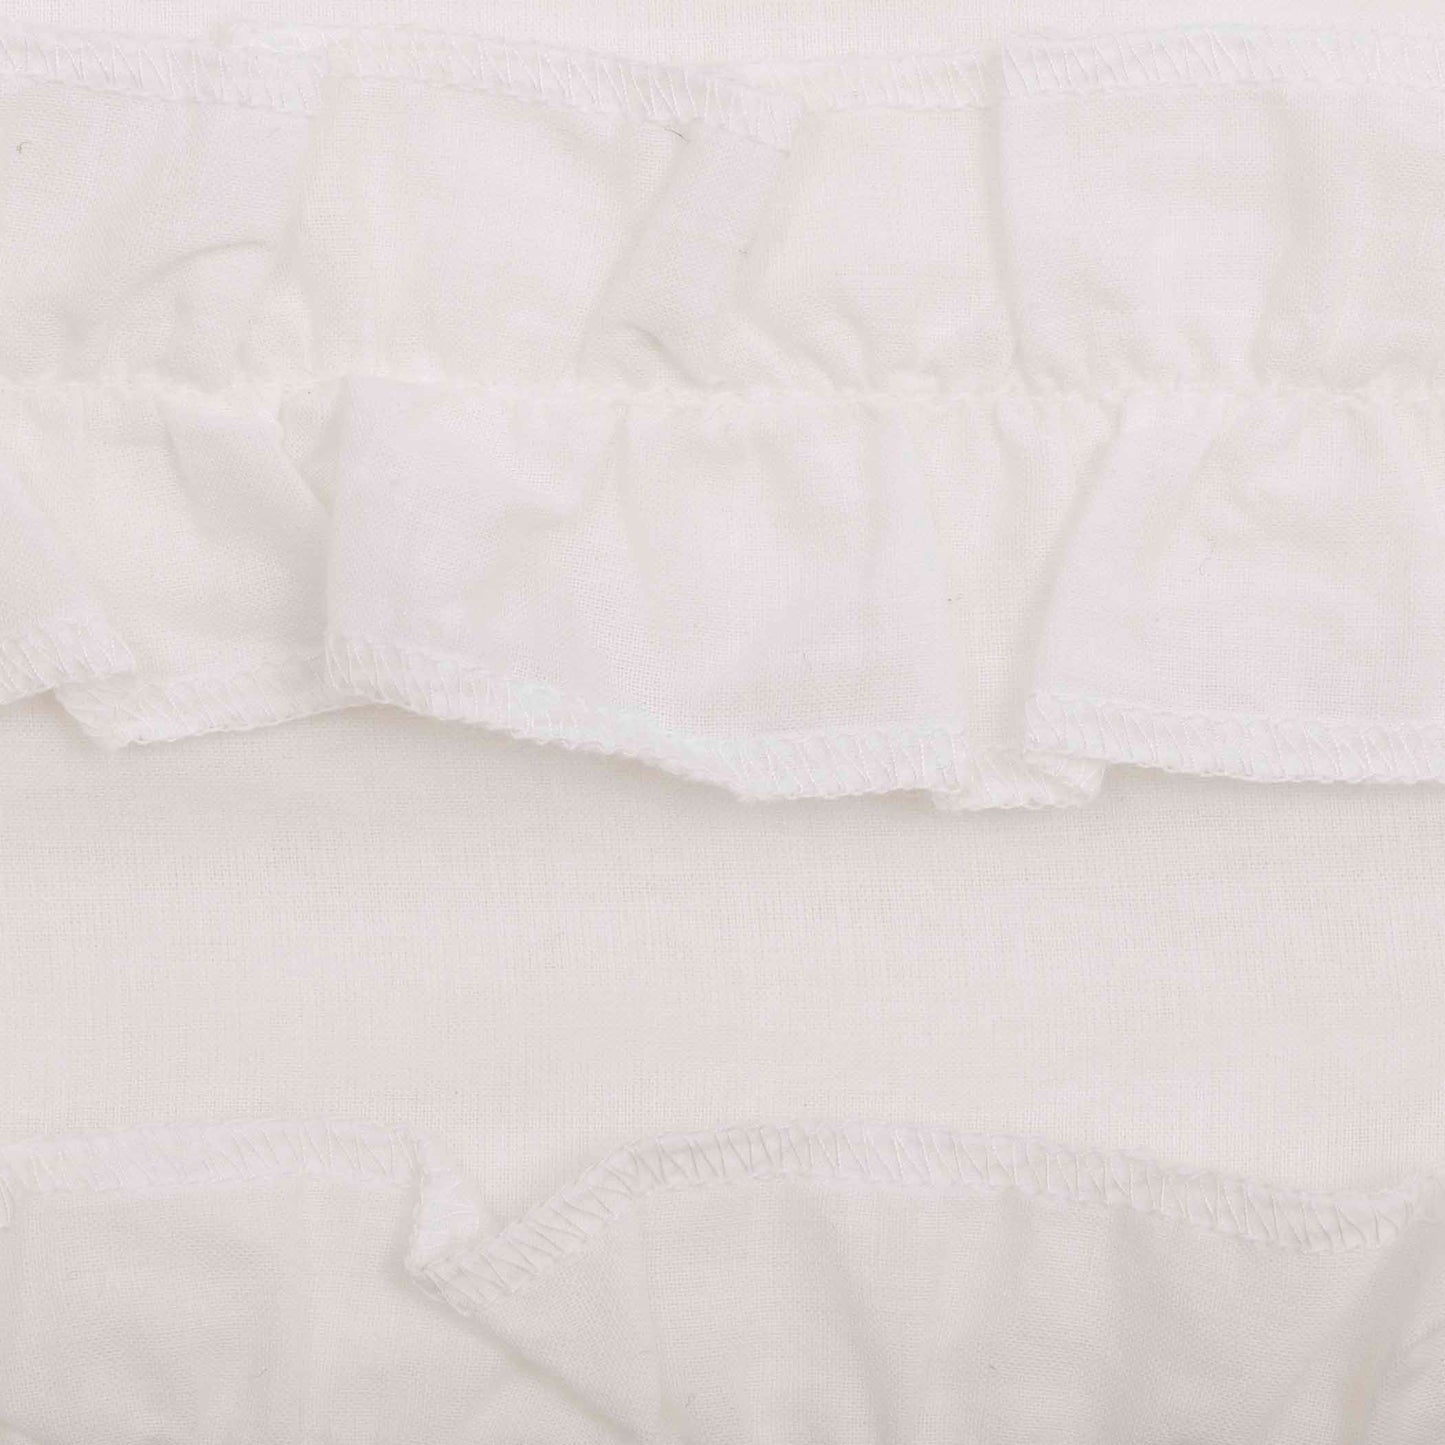 51401-White-Ruffled-Sheer-Petticoat-Prairie-Short-Panel-Set-of-2-63x36x18-image-8